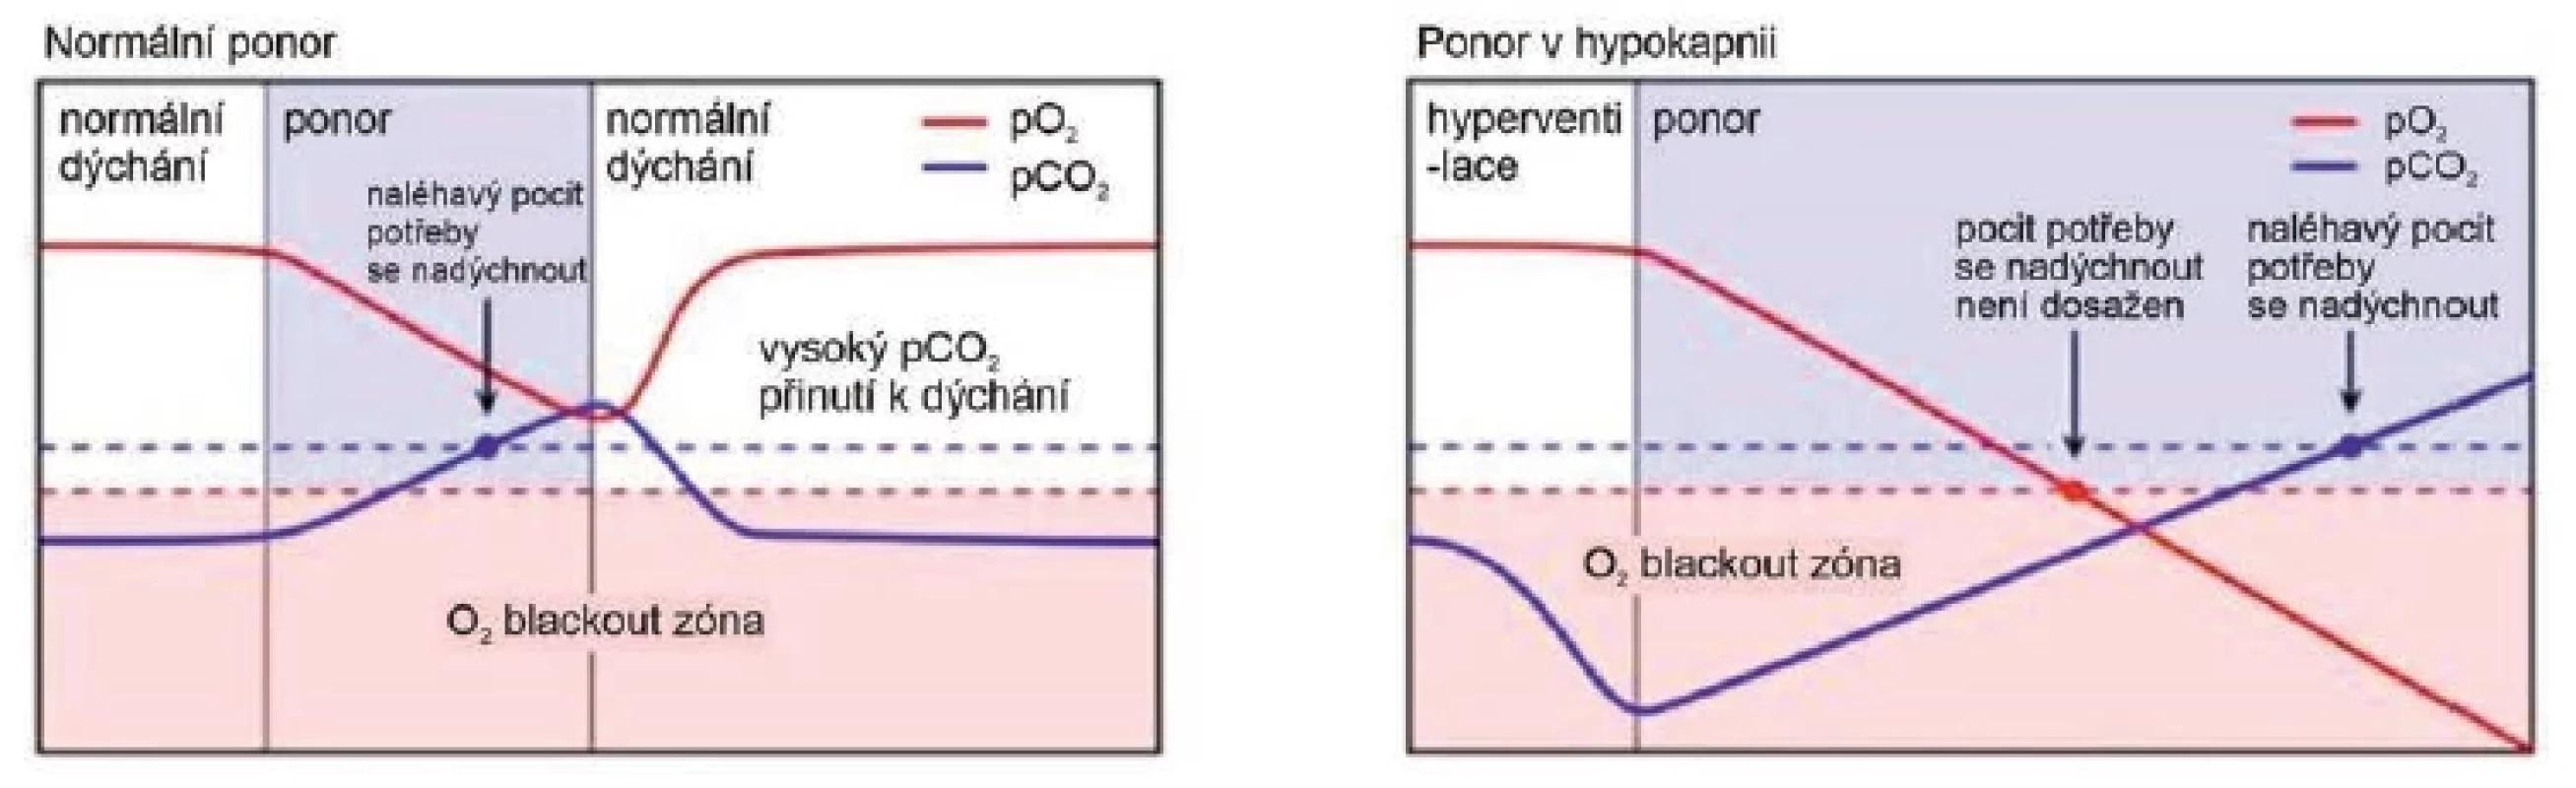 Změny pO2 a pCO2 v průběhu apnoického potápění po normálním dýchání a po hyperventilaci (po hyperventilaci se pocit
potřeby se nadechnout dostaví opožděně, v době, kdy hrozí blackout nebo již k němu dojde)